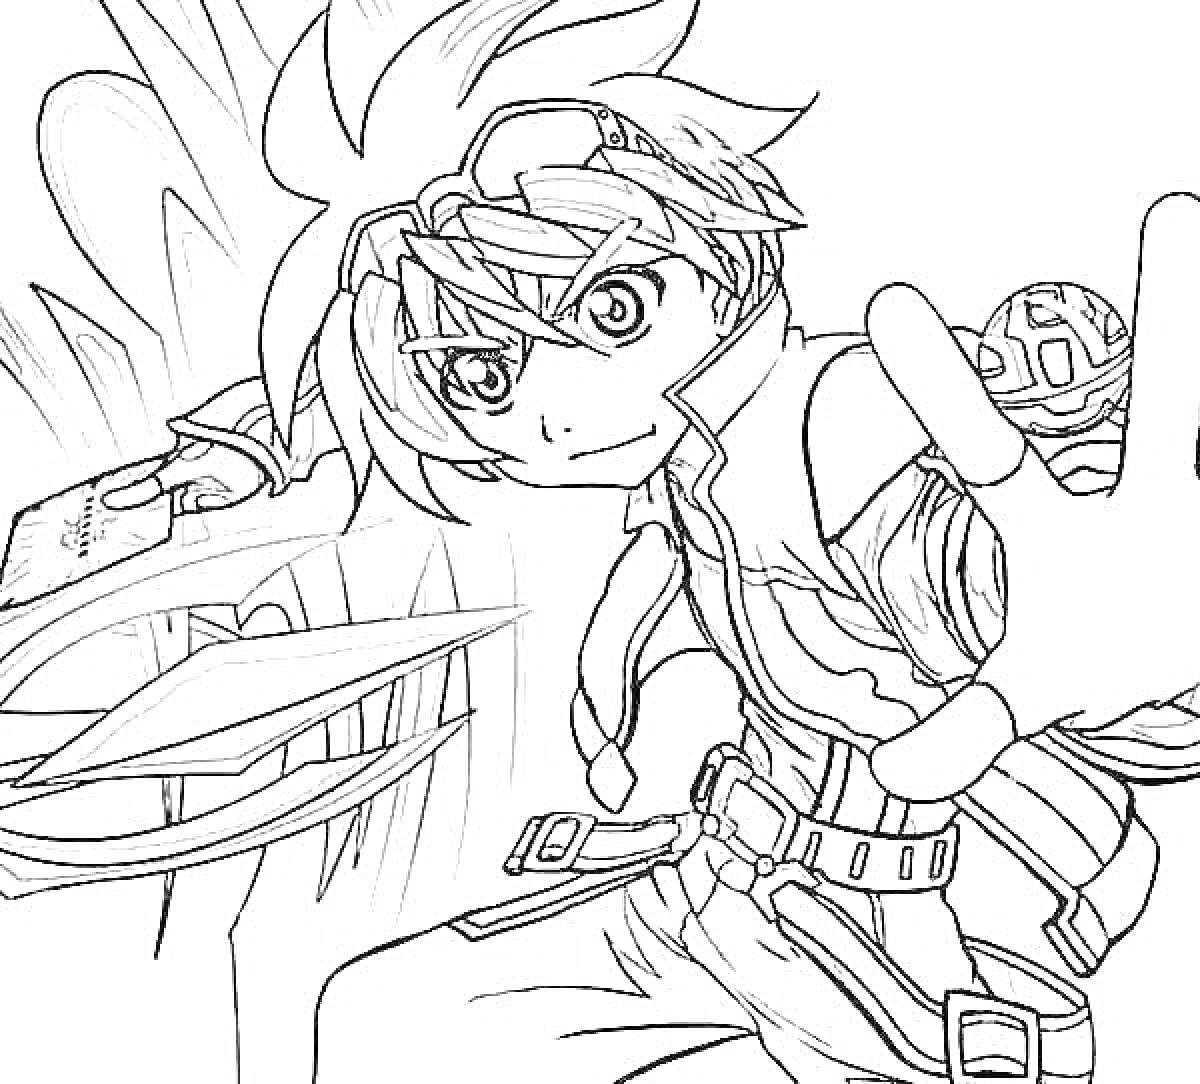 Раскраска аниме персонаж с запястьями на ремнях, мячом и картой, поза для атаки